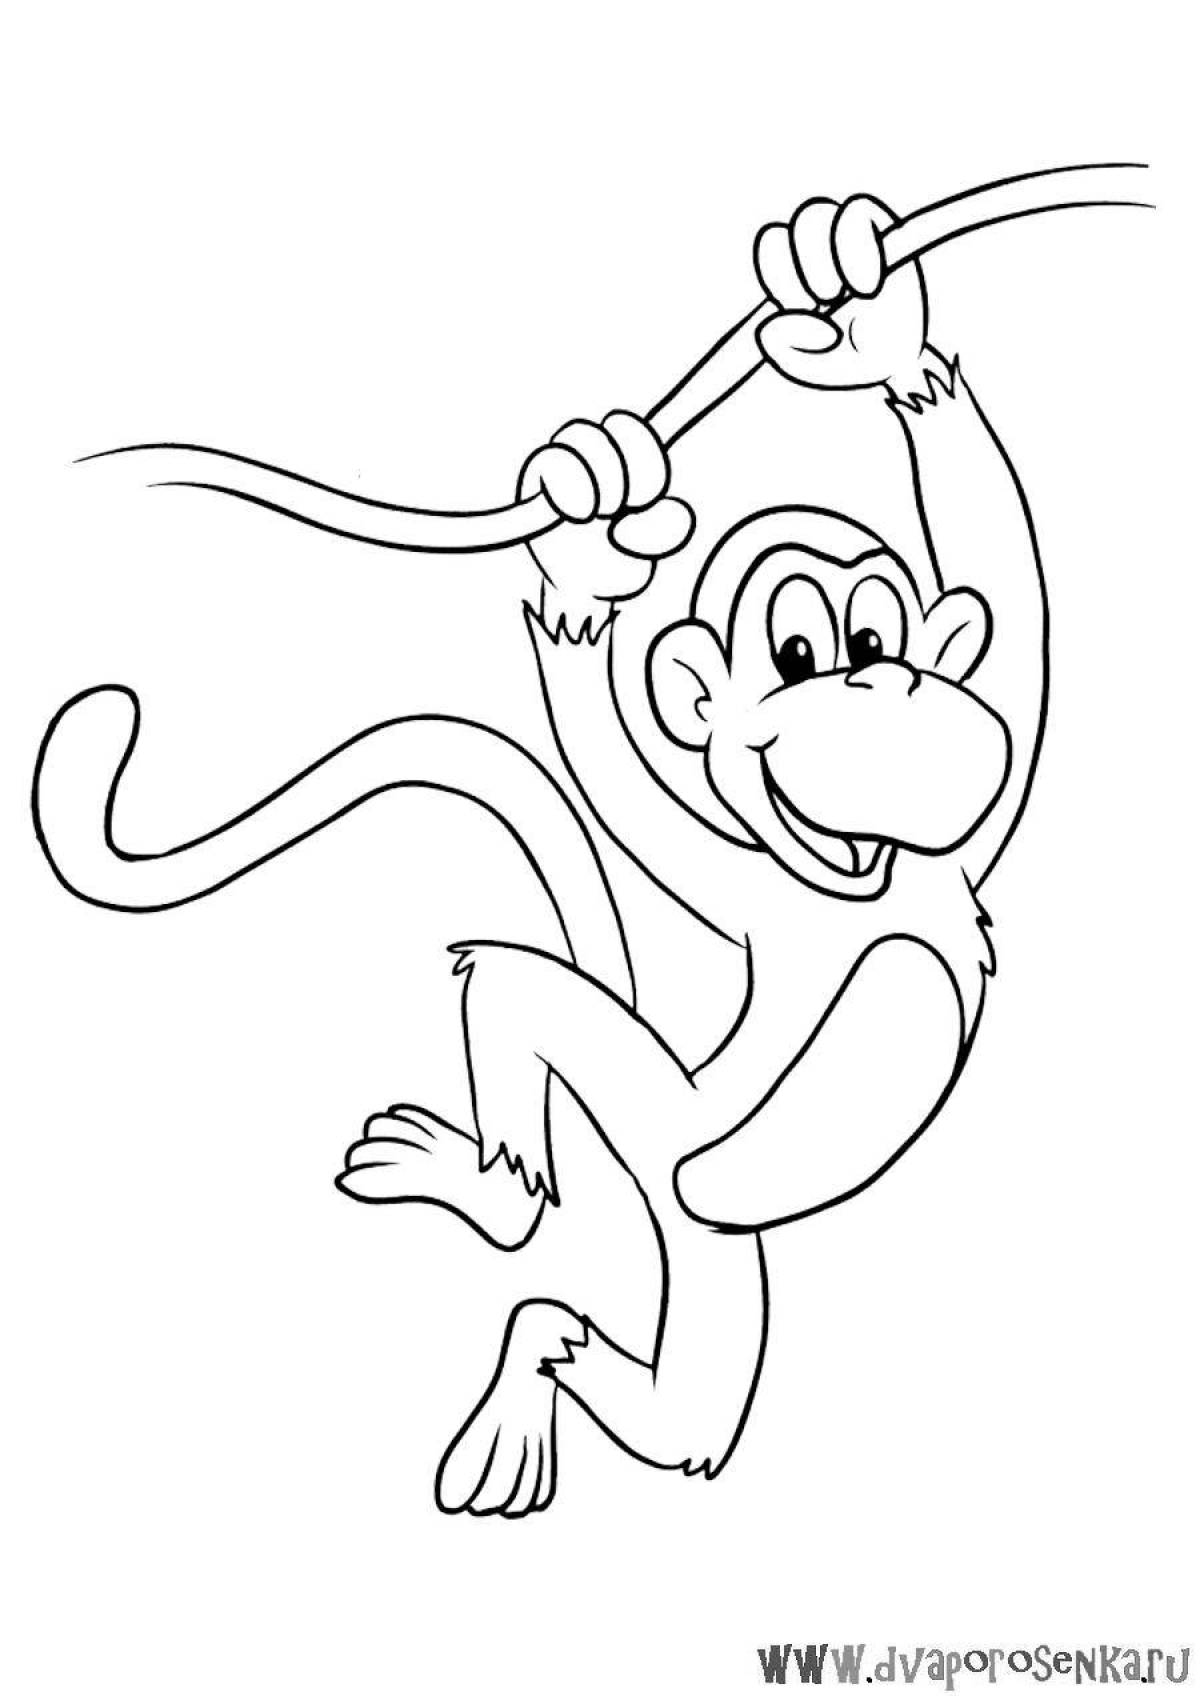 Милая раскраска обезьяна для детей